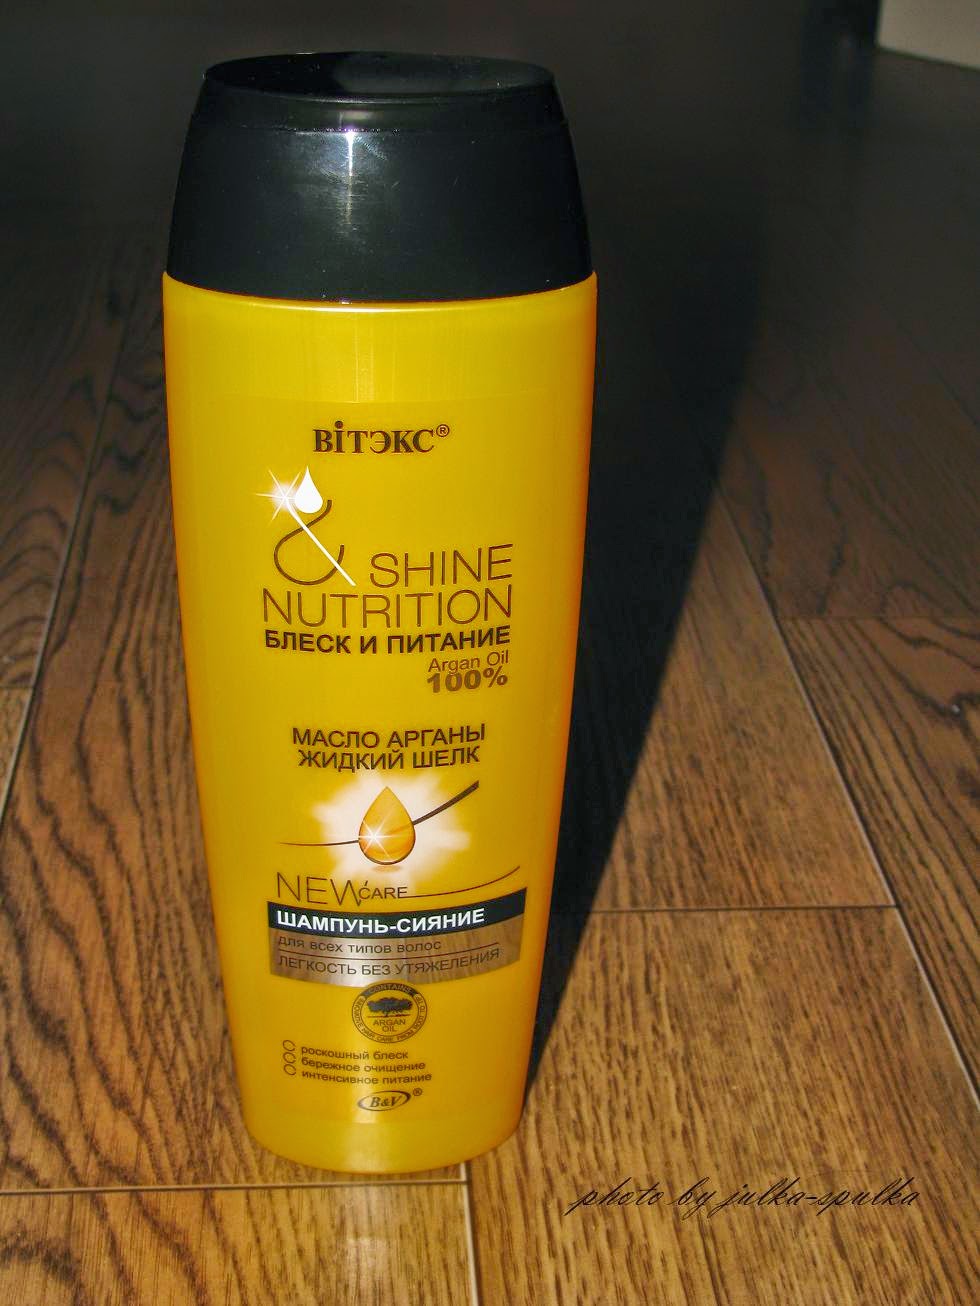 Питание для блеска волос. Шампунь Shine Nutrition. Schine Nutrition масло для волос блеск и питание арганы. Shine для волос.